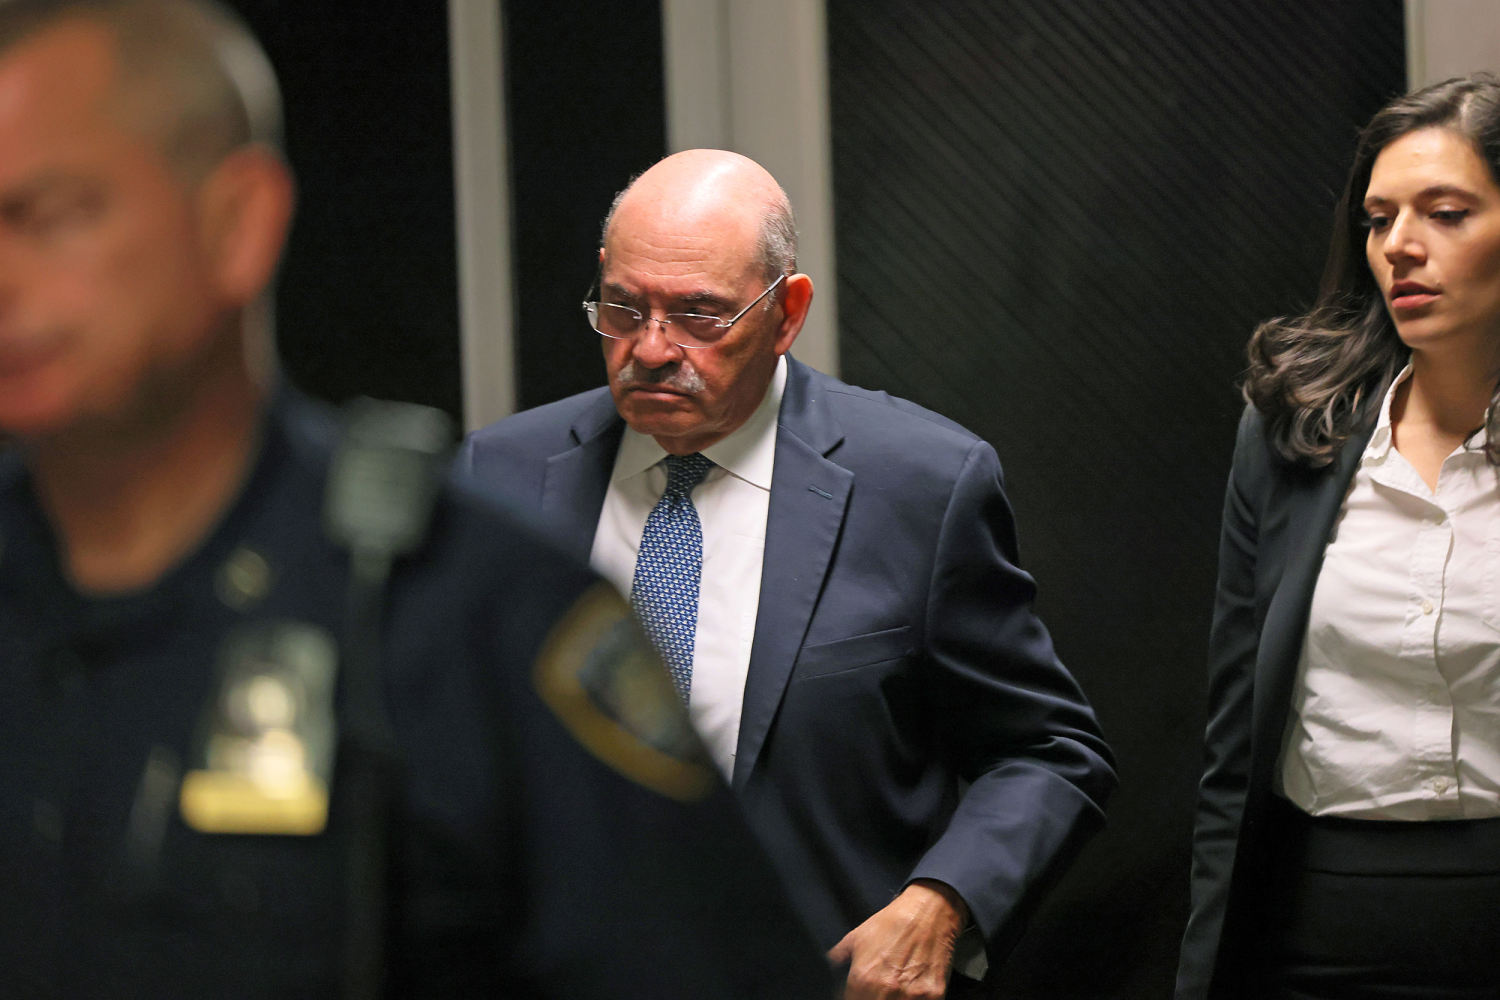 Ex-Trump CFO Allen Weisselberg sentenced to 5 months for perjury in Trump civil fraud trial